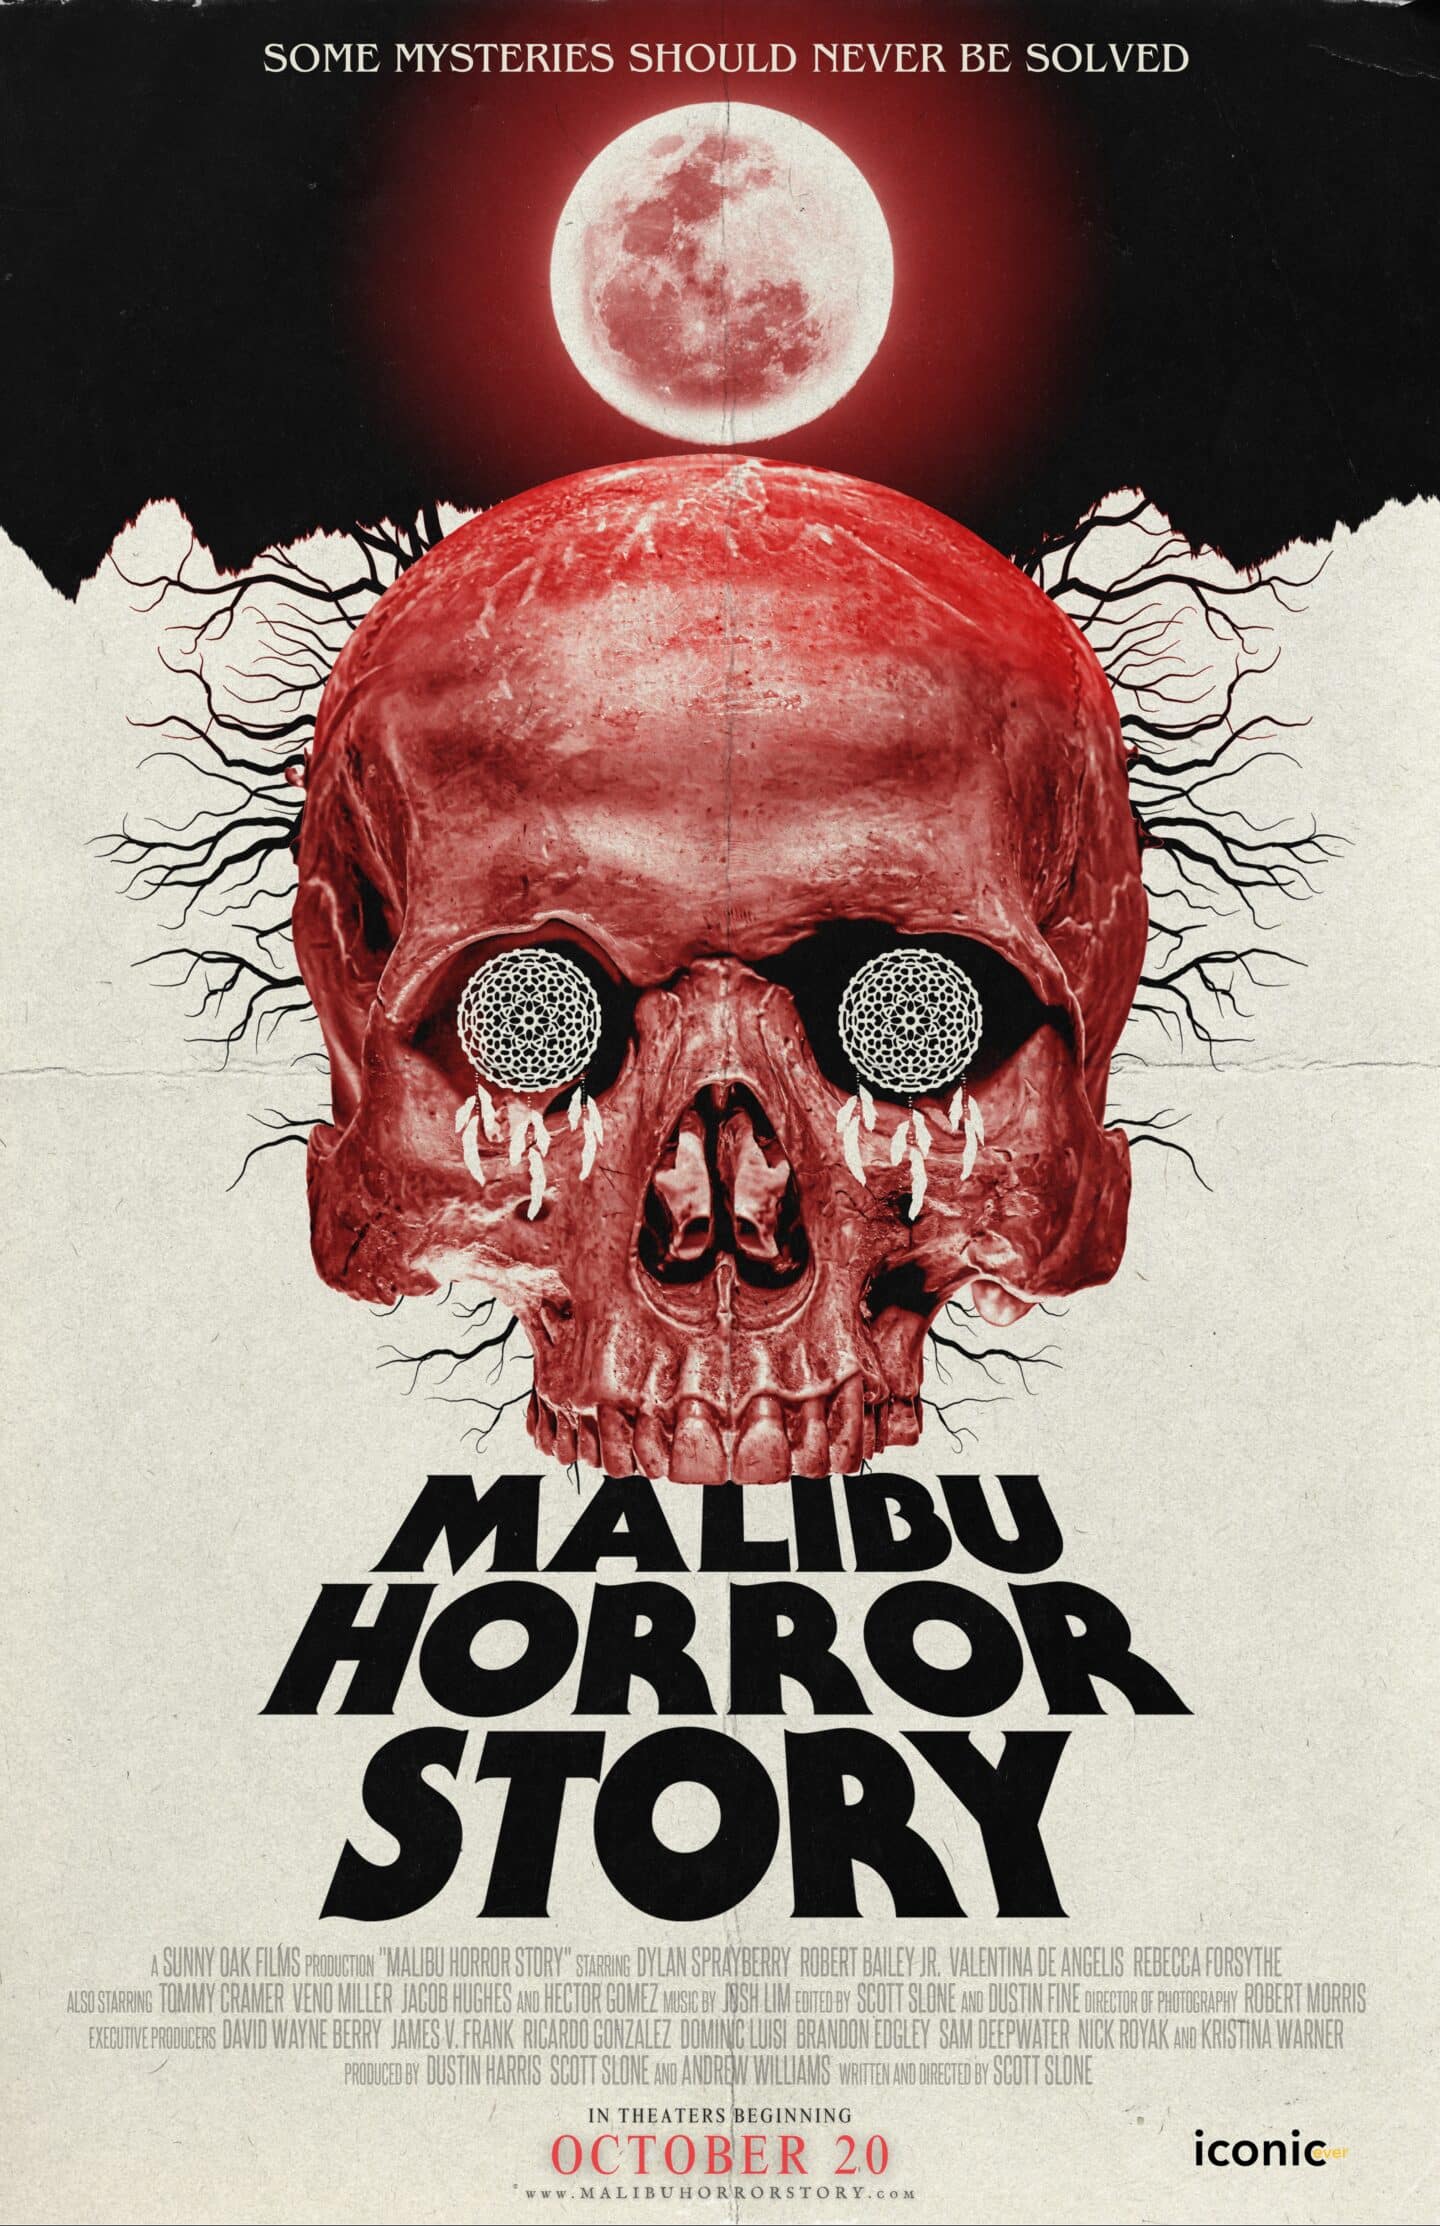 Malibu Horror Story - Teaser Poster